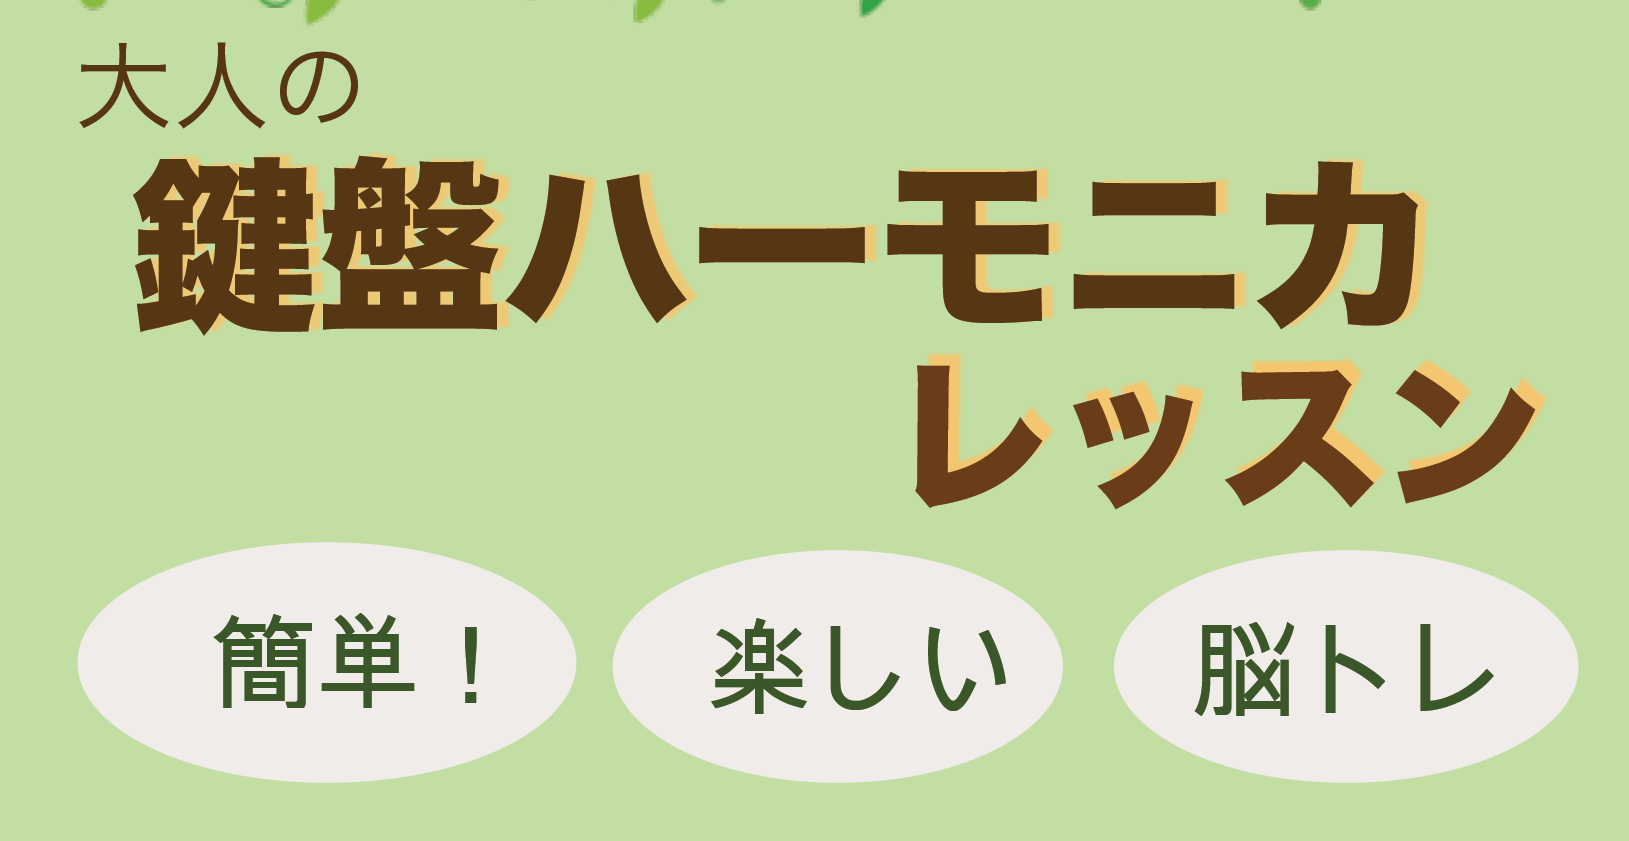 *今話題の「大人の鍵盤ハーモニカ」を演奏してみませんか？ **楽しんで健康になり、美くしくなれる！おとなの鍵盤ハーモニカレッスン好評開講中！ こんにちは！ユーカリが丘店インストラクターの[https://www.shimamura.co.jp/shop/yukari/instructor/20180 […]